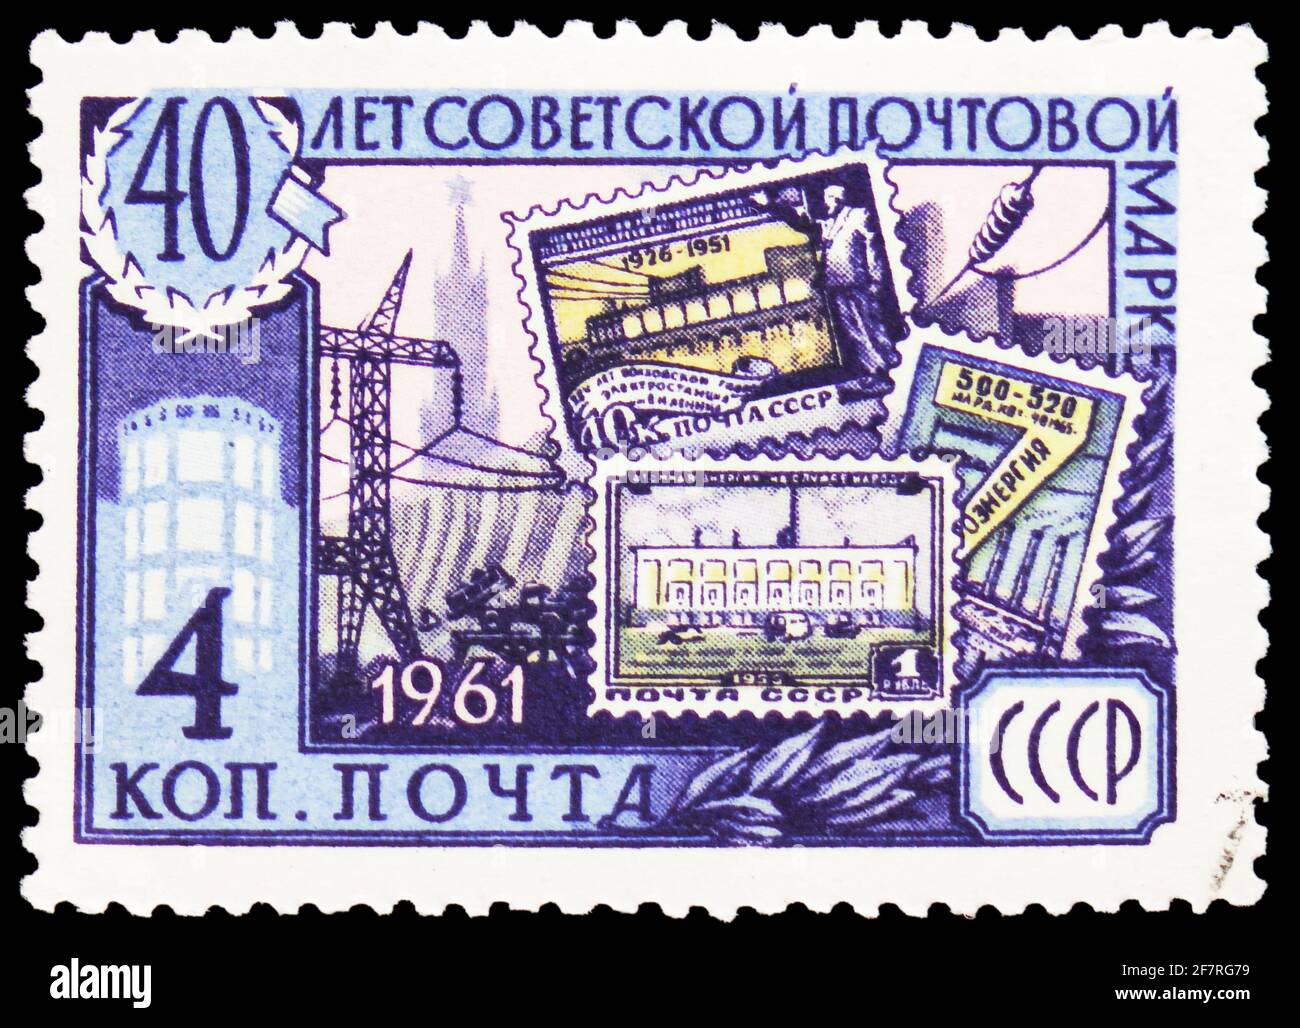 MOSCÚ, RUSIA - 17 DE ENERO de 2021: Sello postal impreso en la Unión  Soviética muestra sellos conmemorativos de la Electrificación, 40 años de Sellos  Soviéticos de Postage Fotografía de stock - Alamy